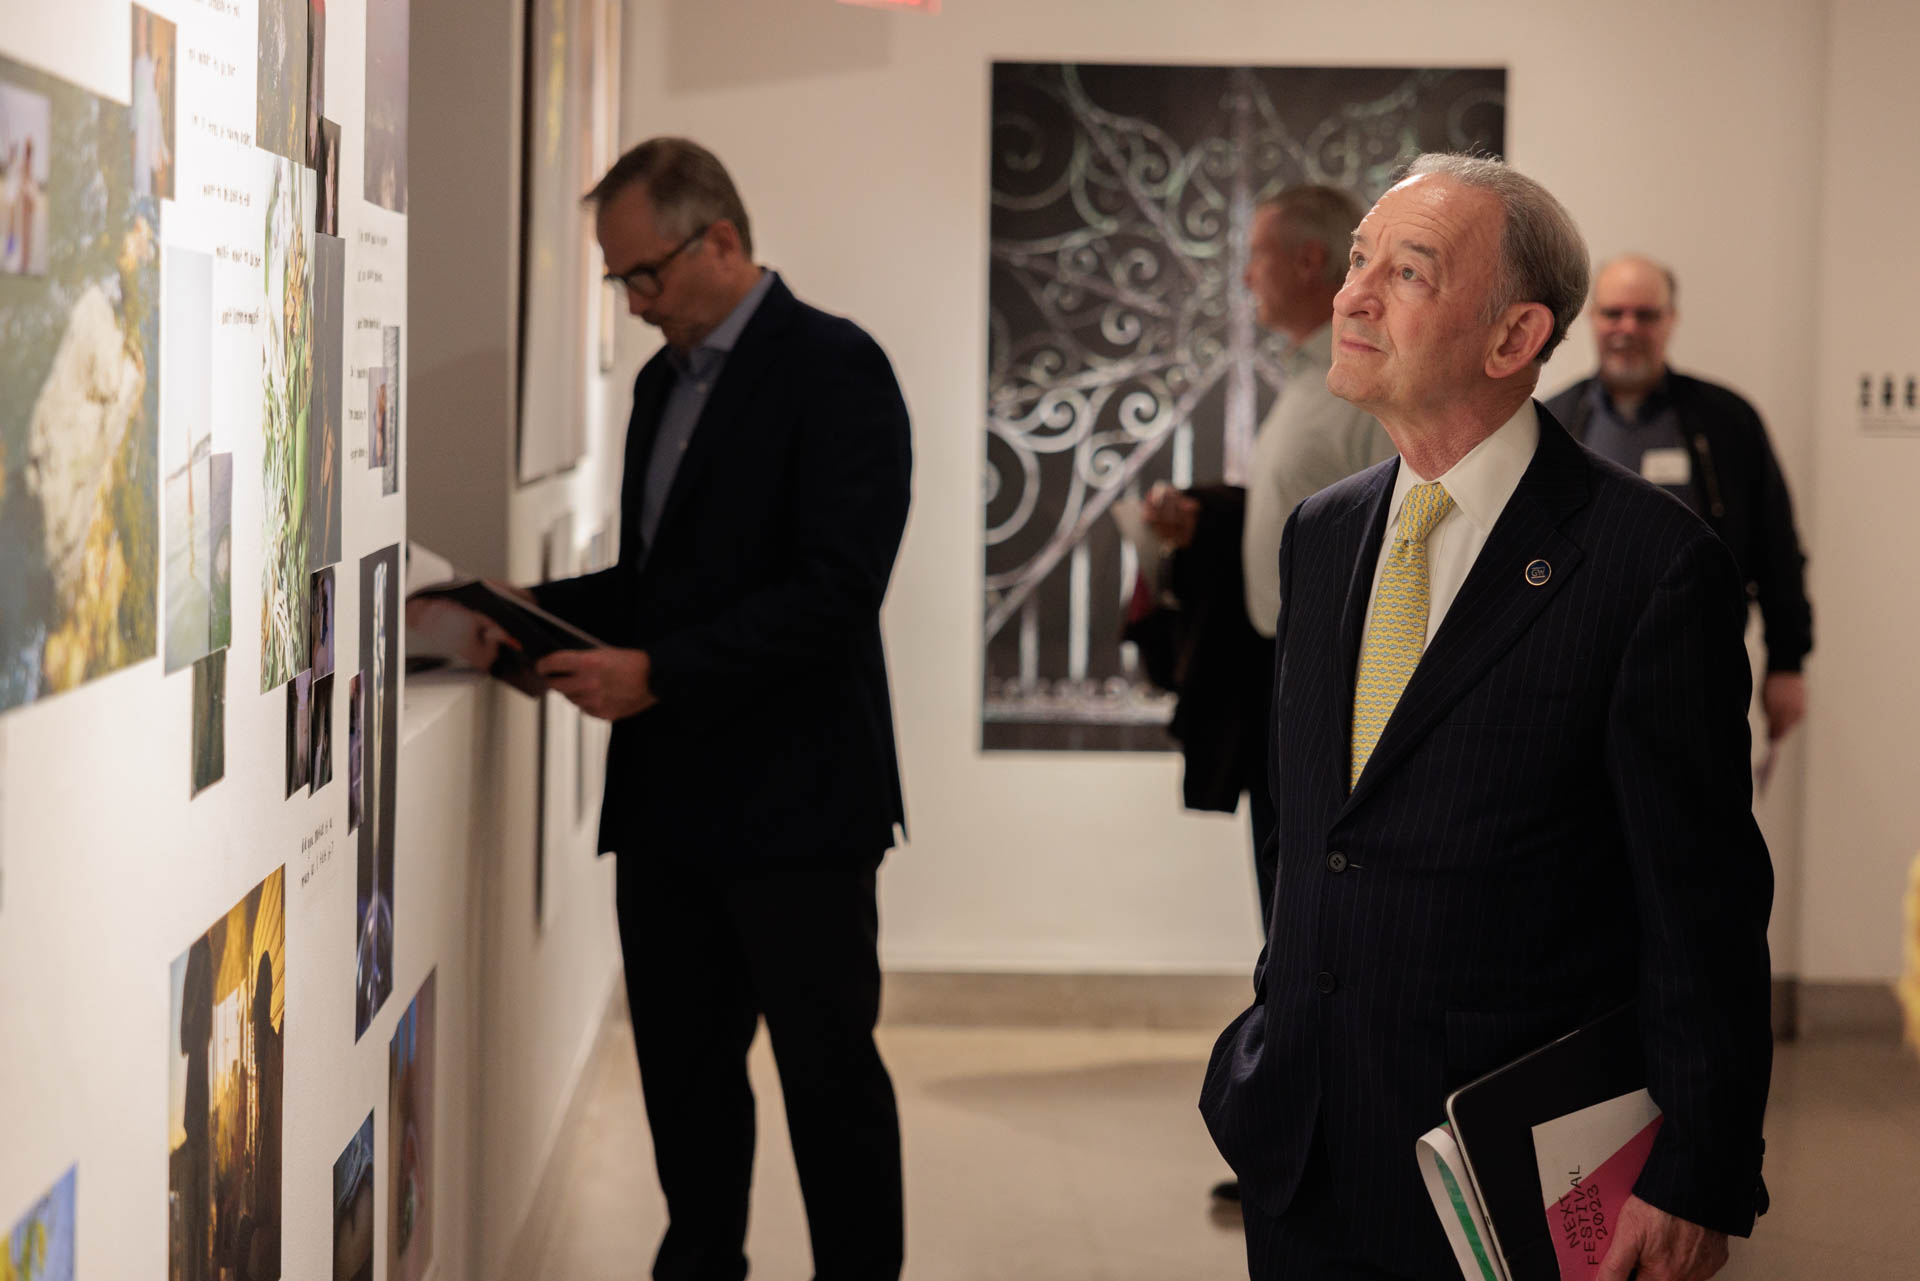 President Wrighton enjoyed the artworks on display at NEXT